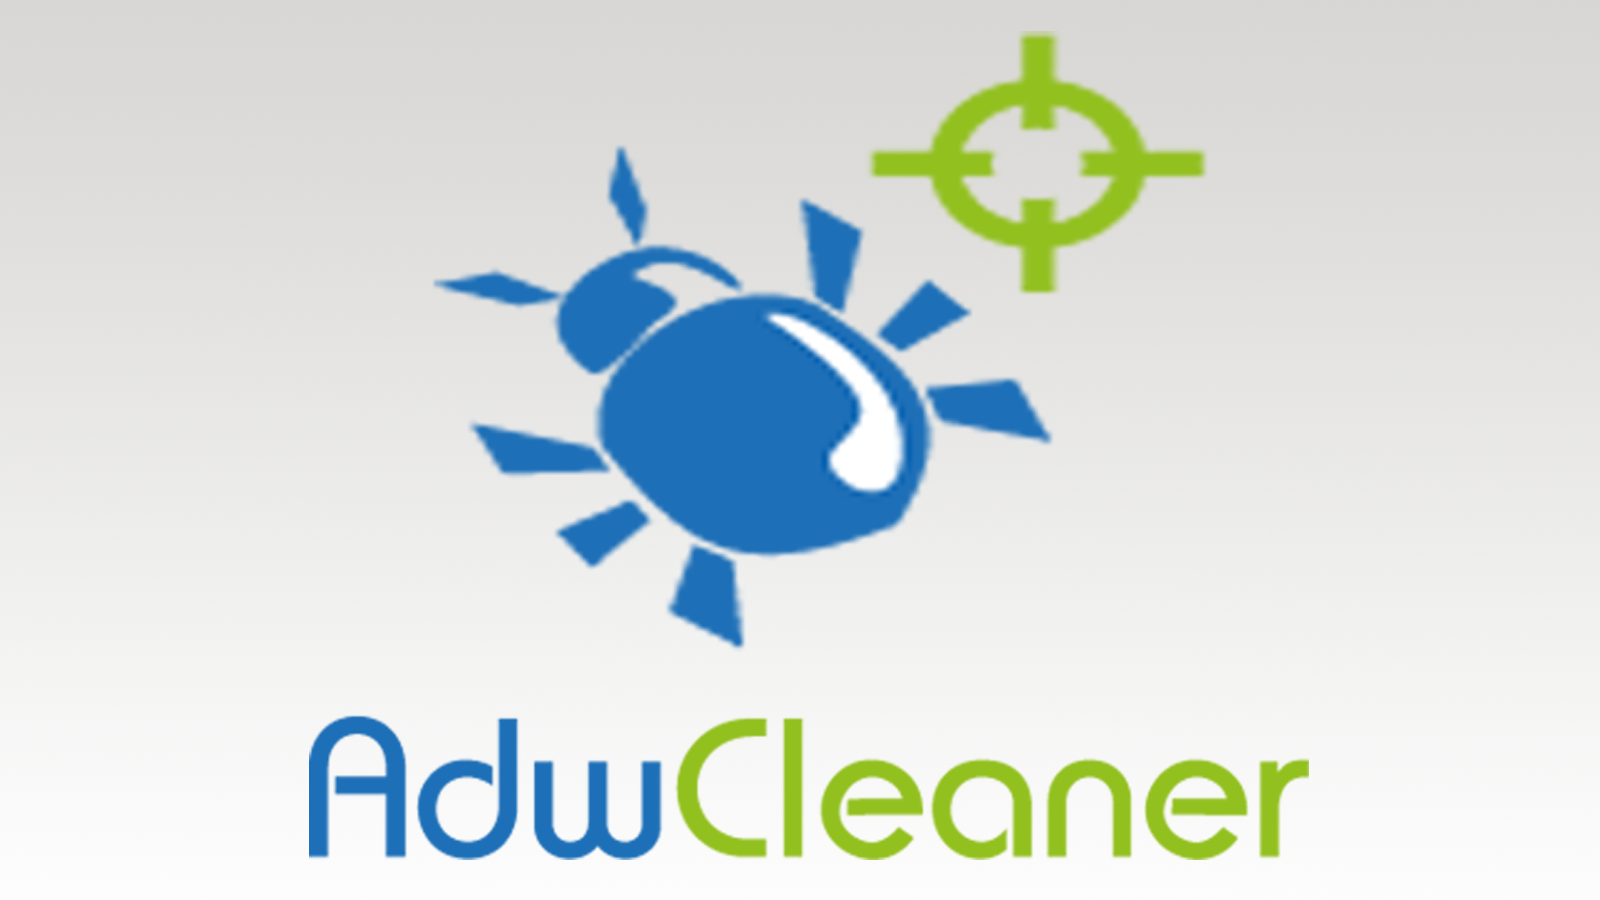 adw cleaner full